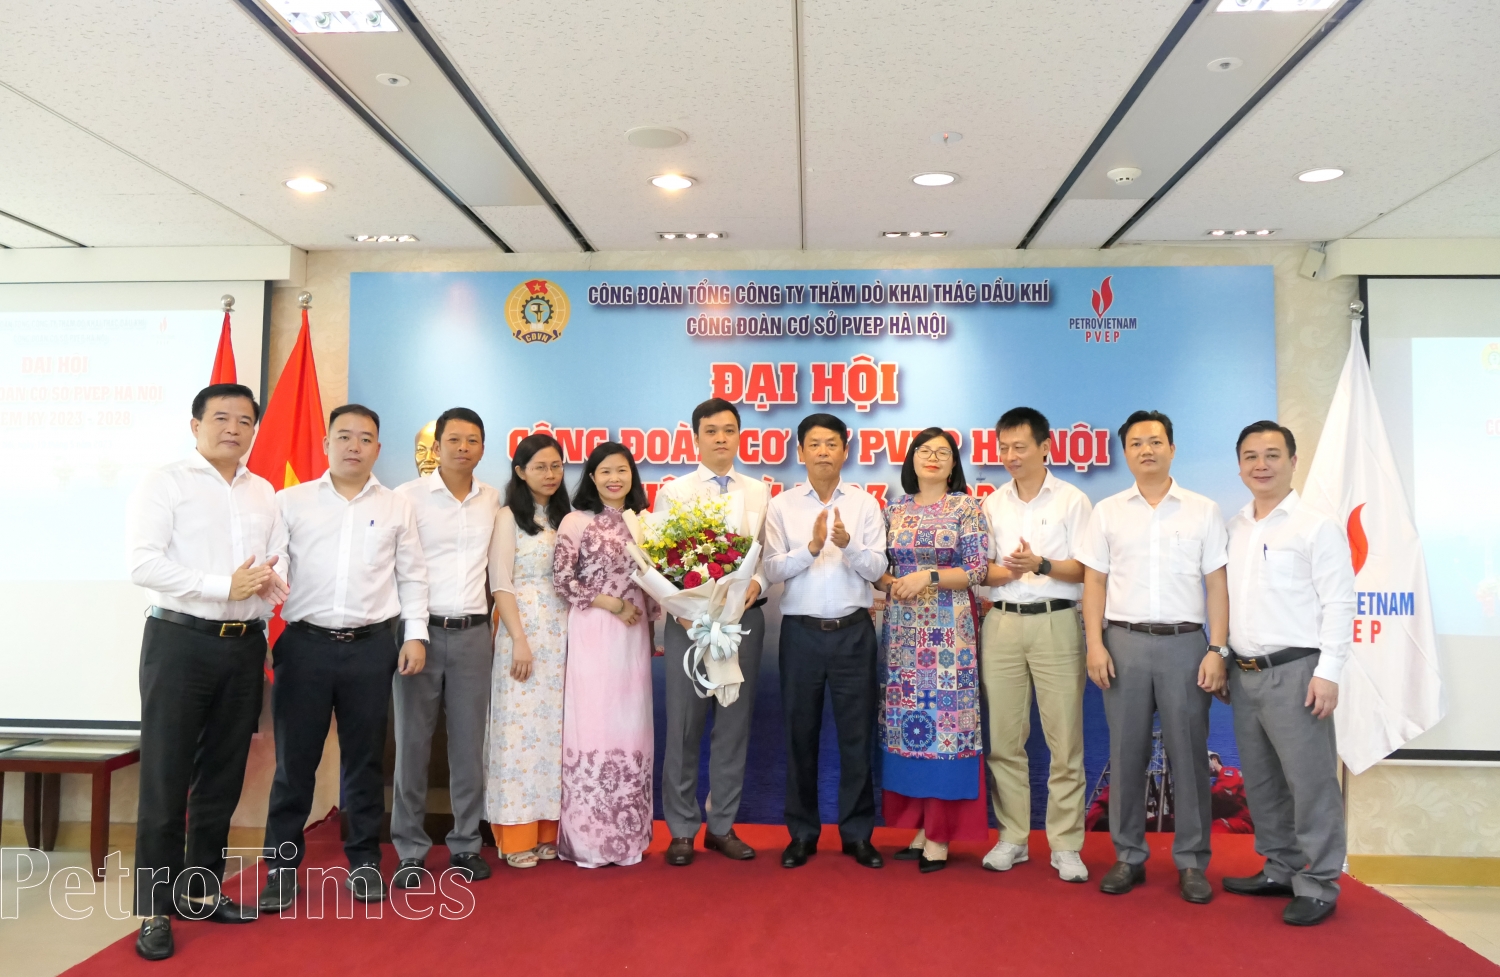 Công đoàn cơ sở PVEP Hà Nội ra mắt ban chấp hành nhiệm kỳ 2023-2028